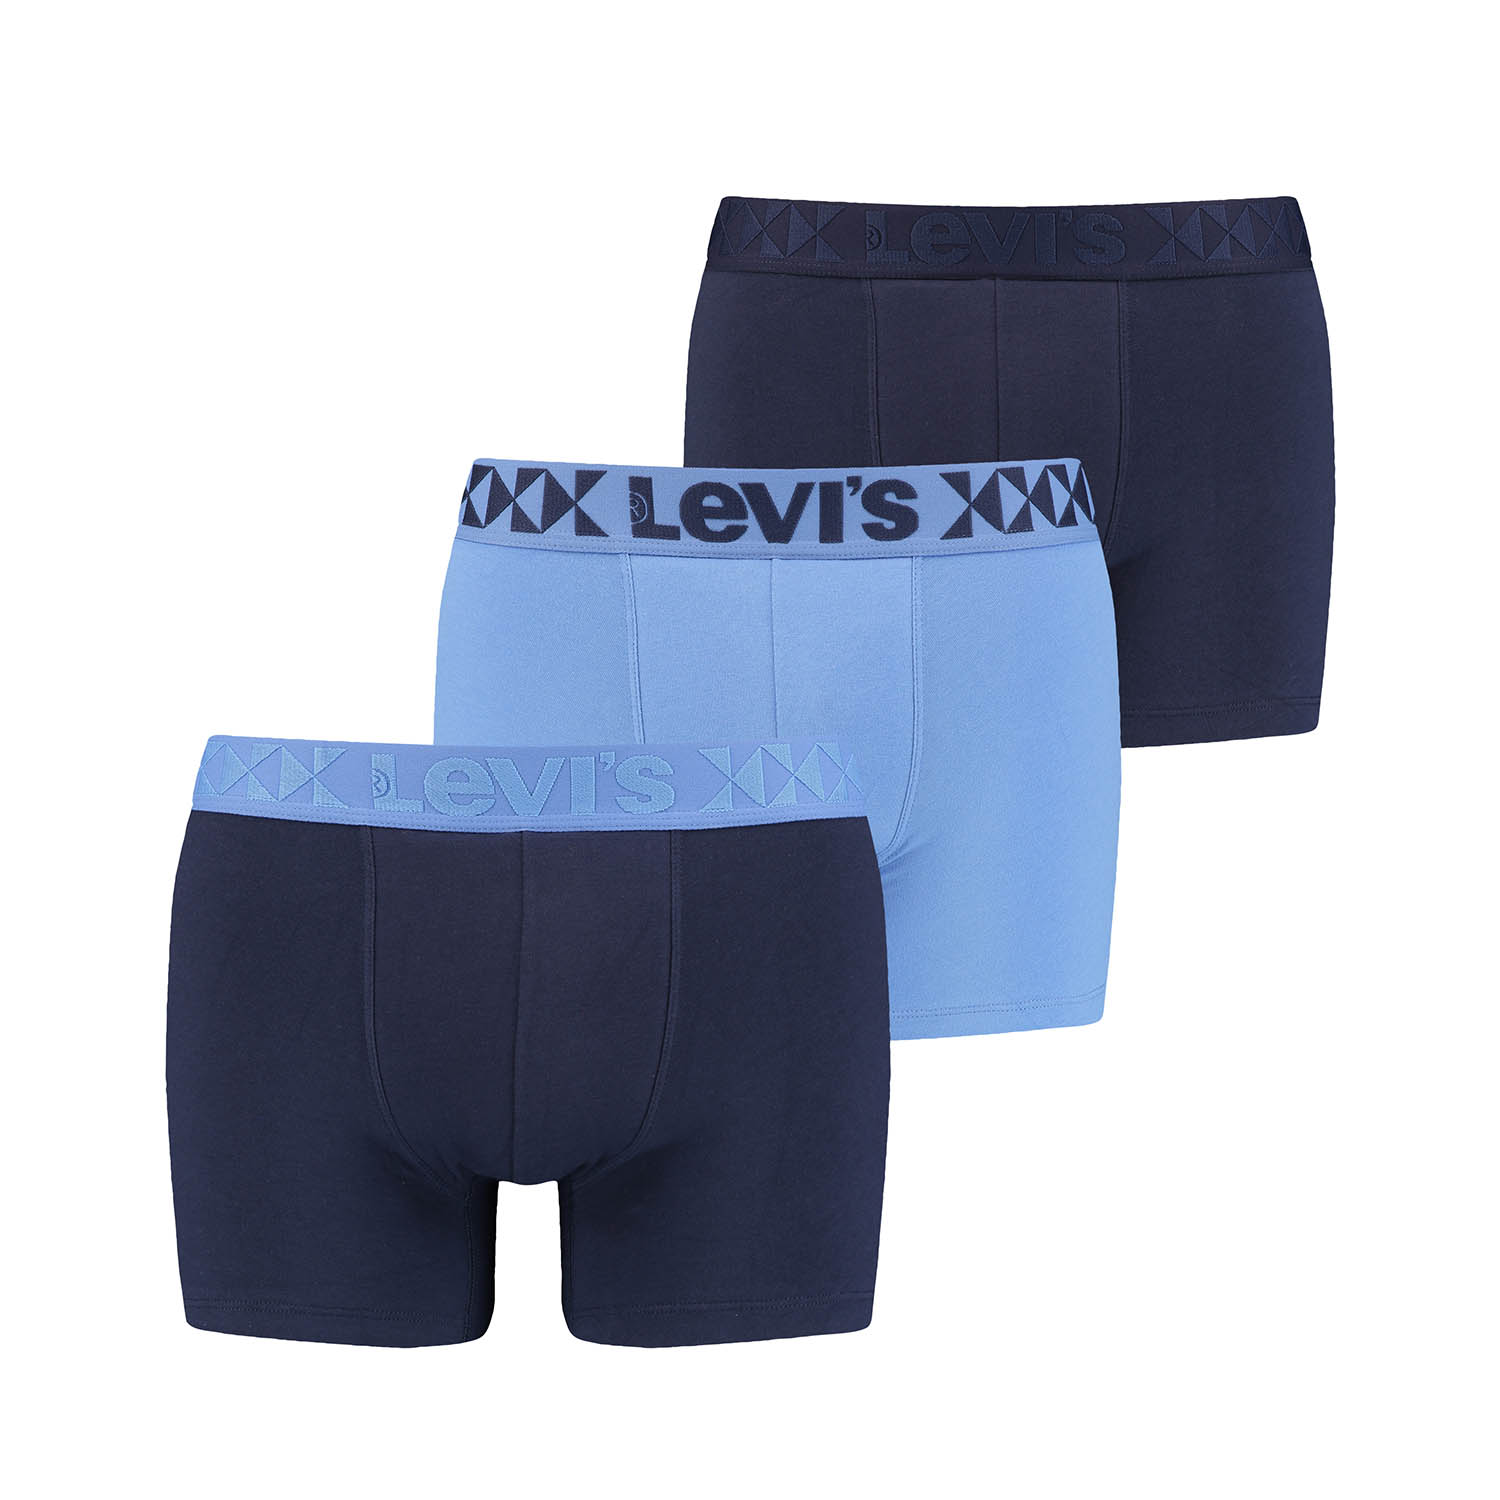 3 er Pack Levis Boxer Brief Herren Boxershorts Unterhose Pant Unterwäsche Geschenkbox Denim